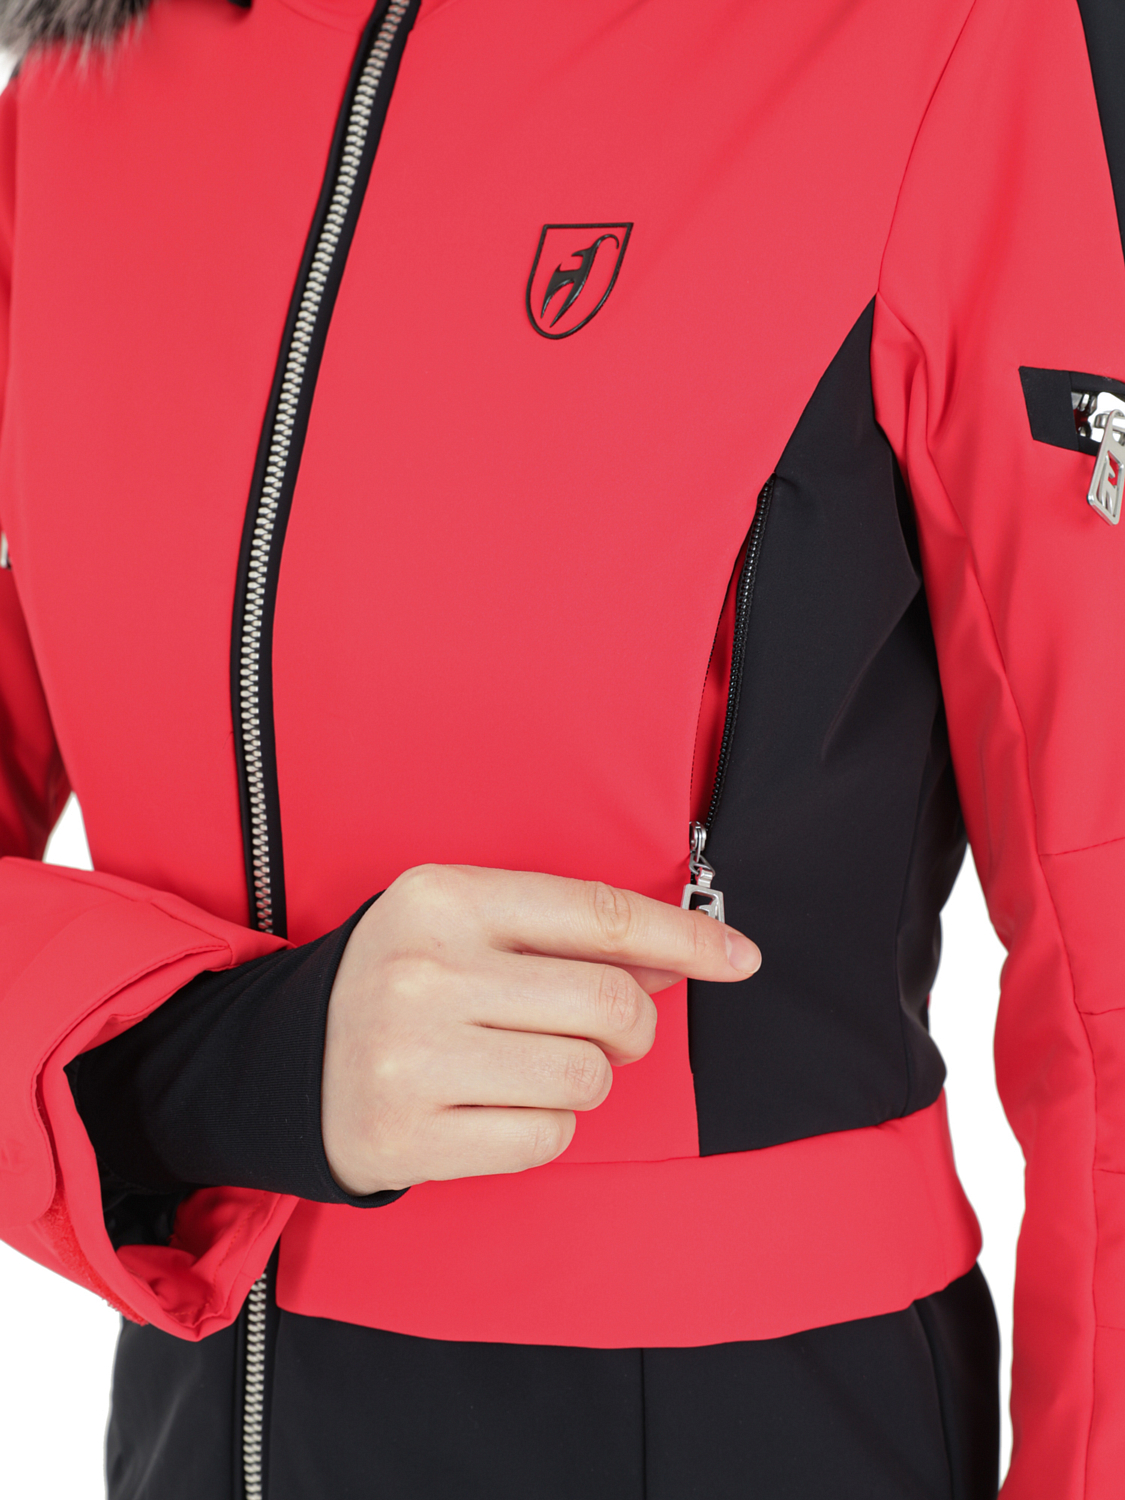 Куртка горнолыжная с воротником TONI SAILER Lara Pink Red